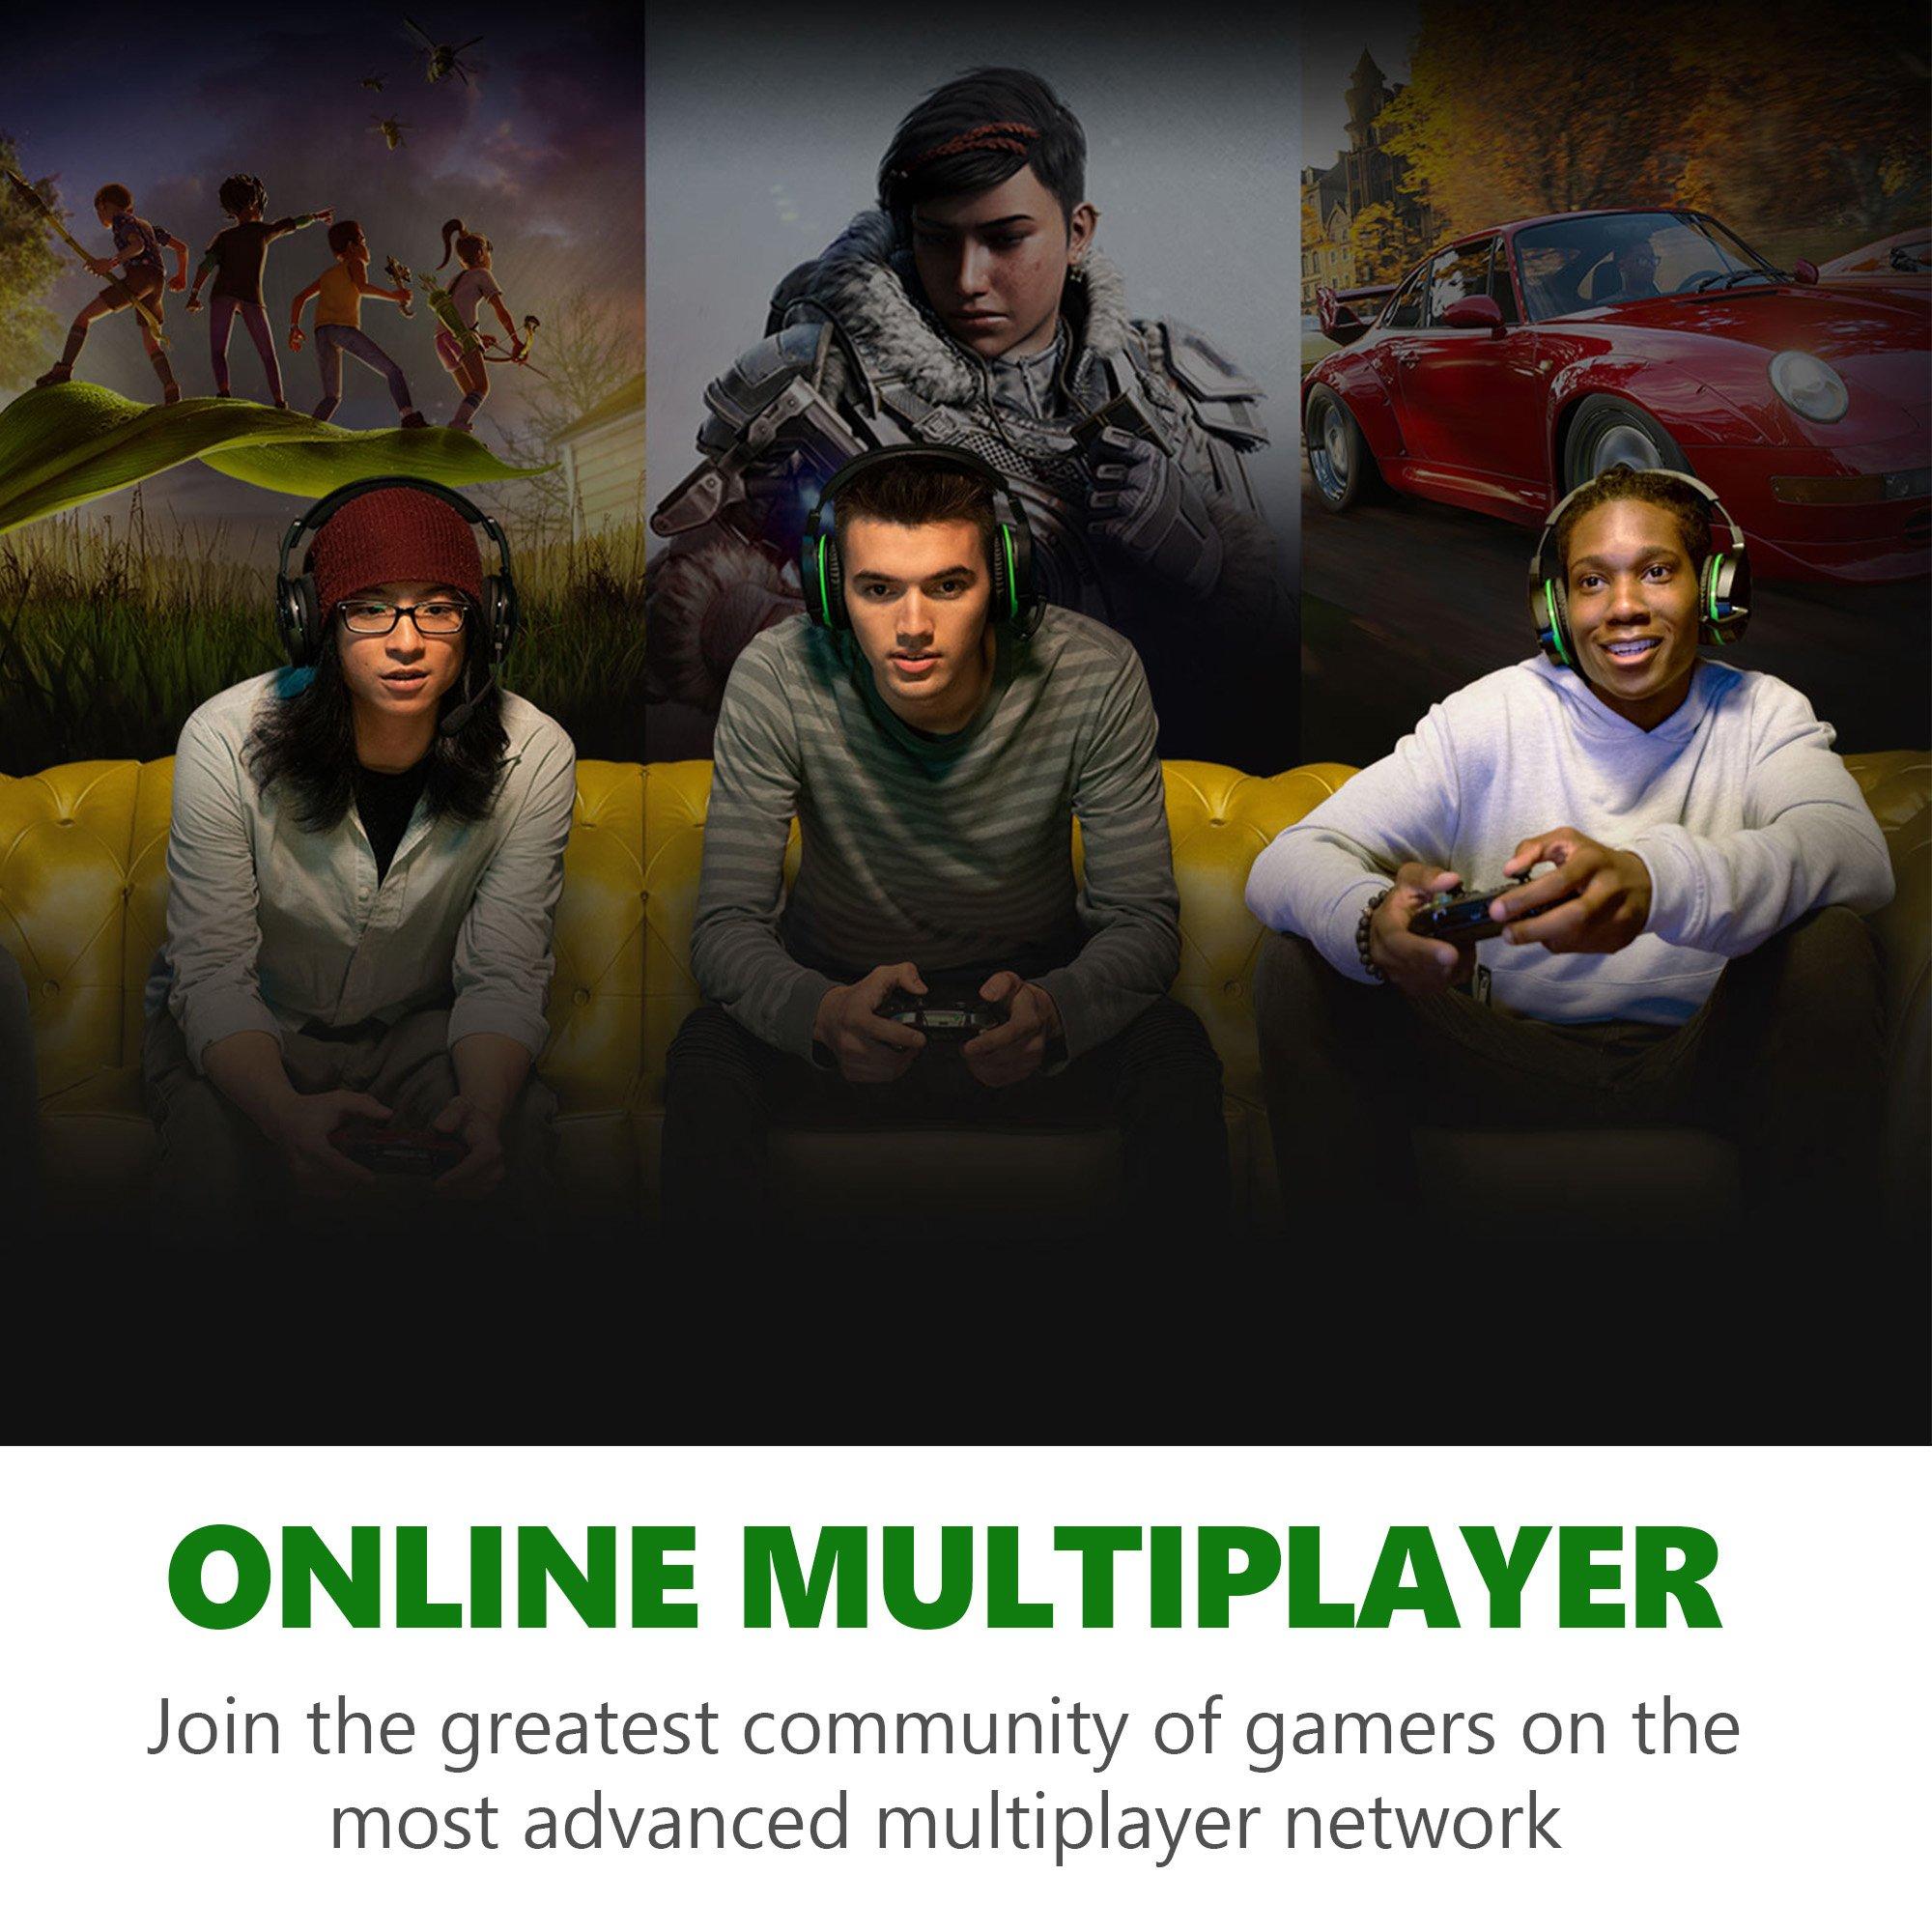 Xbox Game Pass Ultimate — 1 Month Membership [Digital]